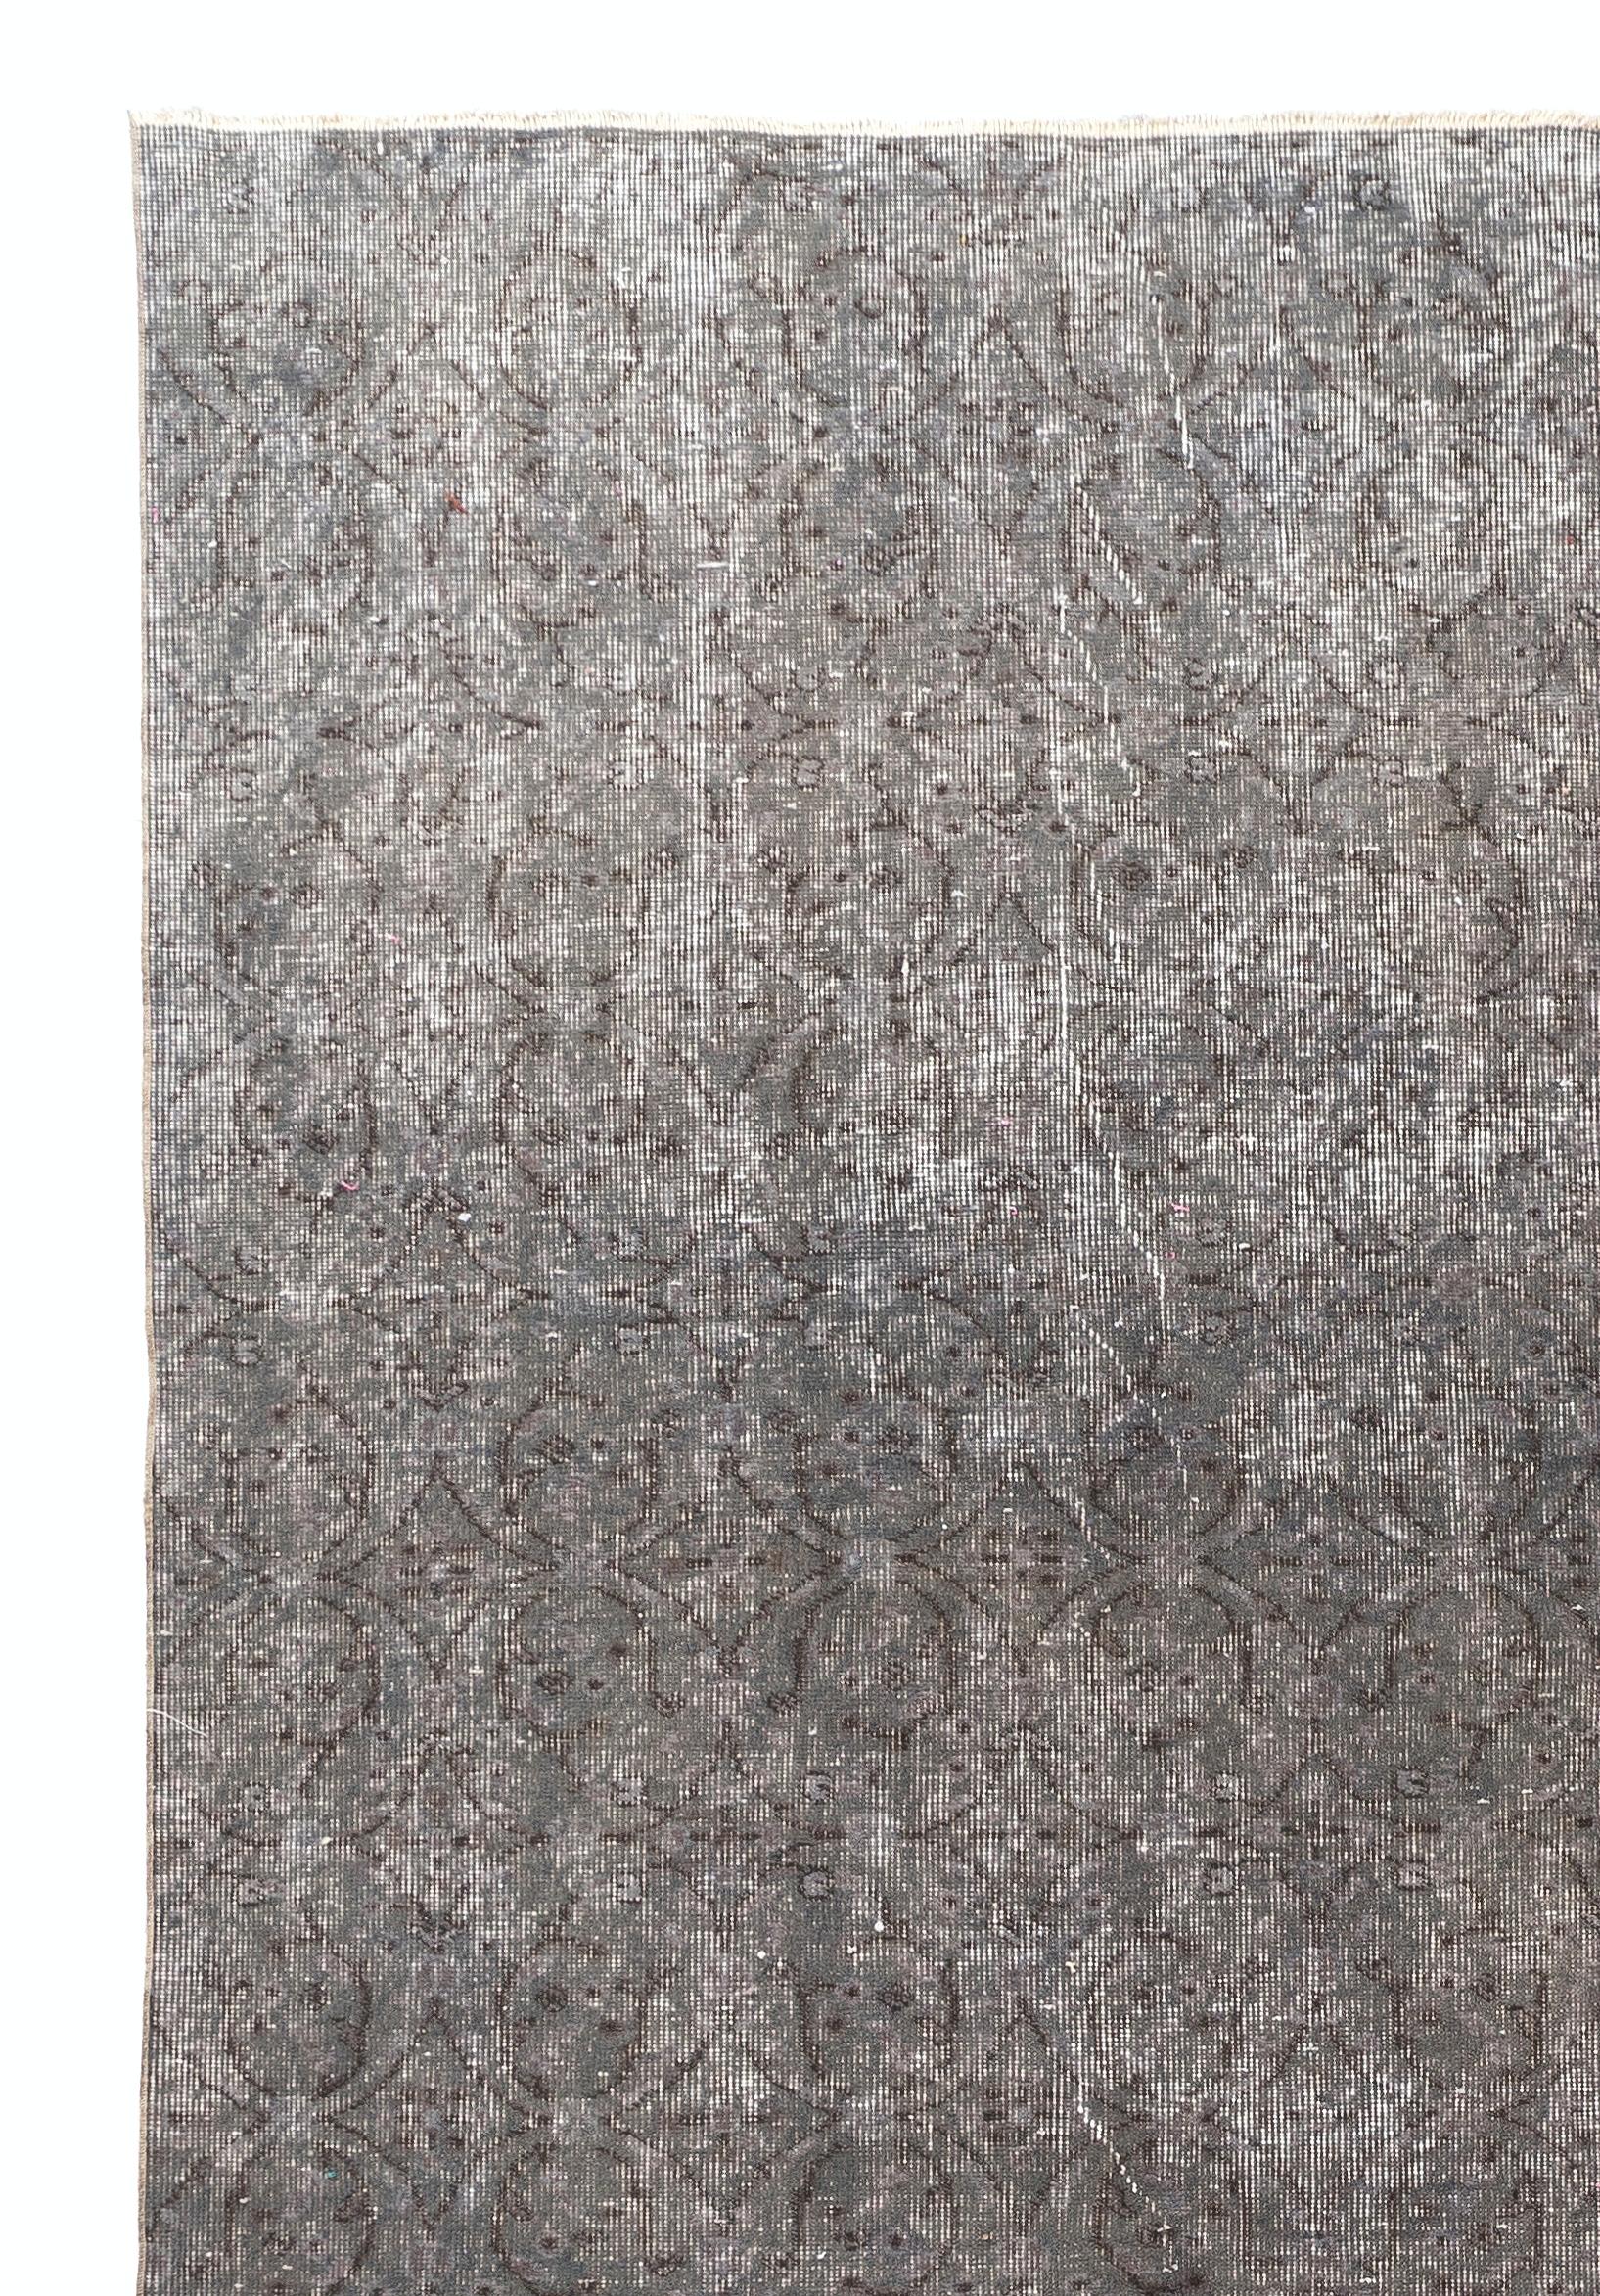 Ein türkischer Teppich im Vintage-Stil, der in Grau gefärbt ist und sich für zeitgenössische Interieurs eignet.
Fein handgeknüpft, niedriger Wollflor auf Baumwollbasis. Professionell gewaschen.
Robust und geeignet für stark frequentierte Bereiche,